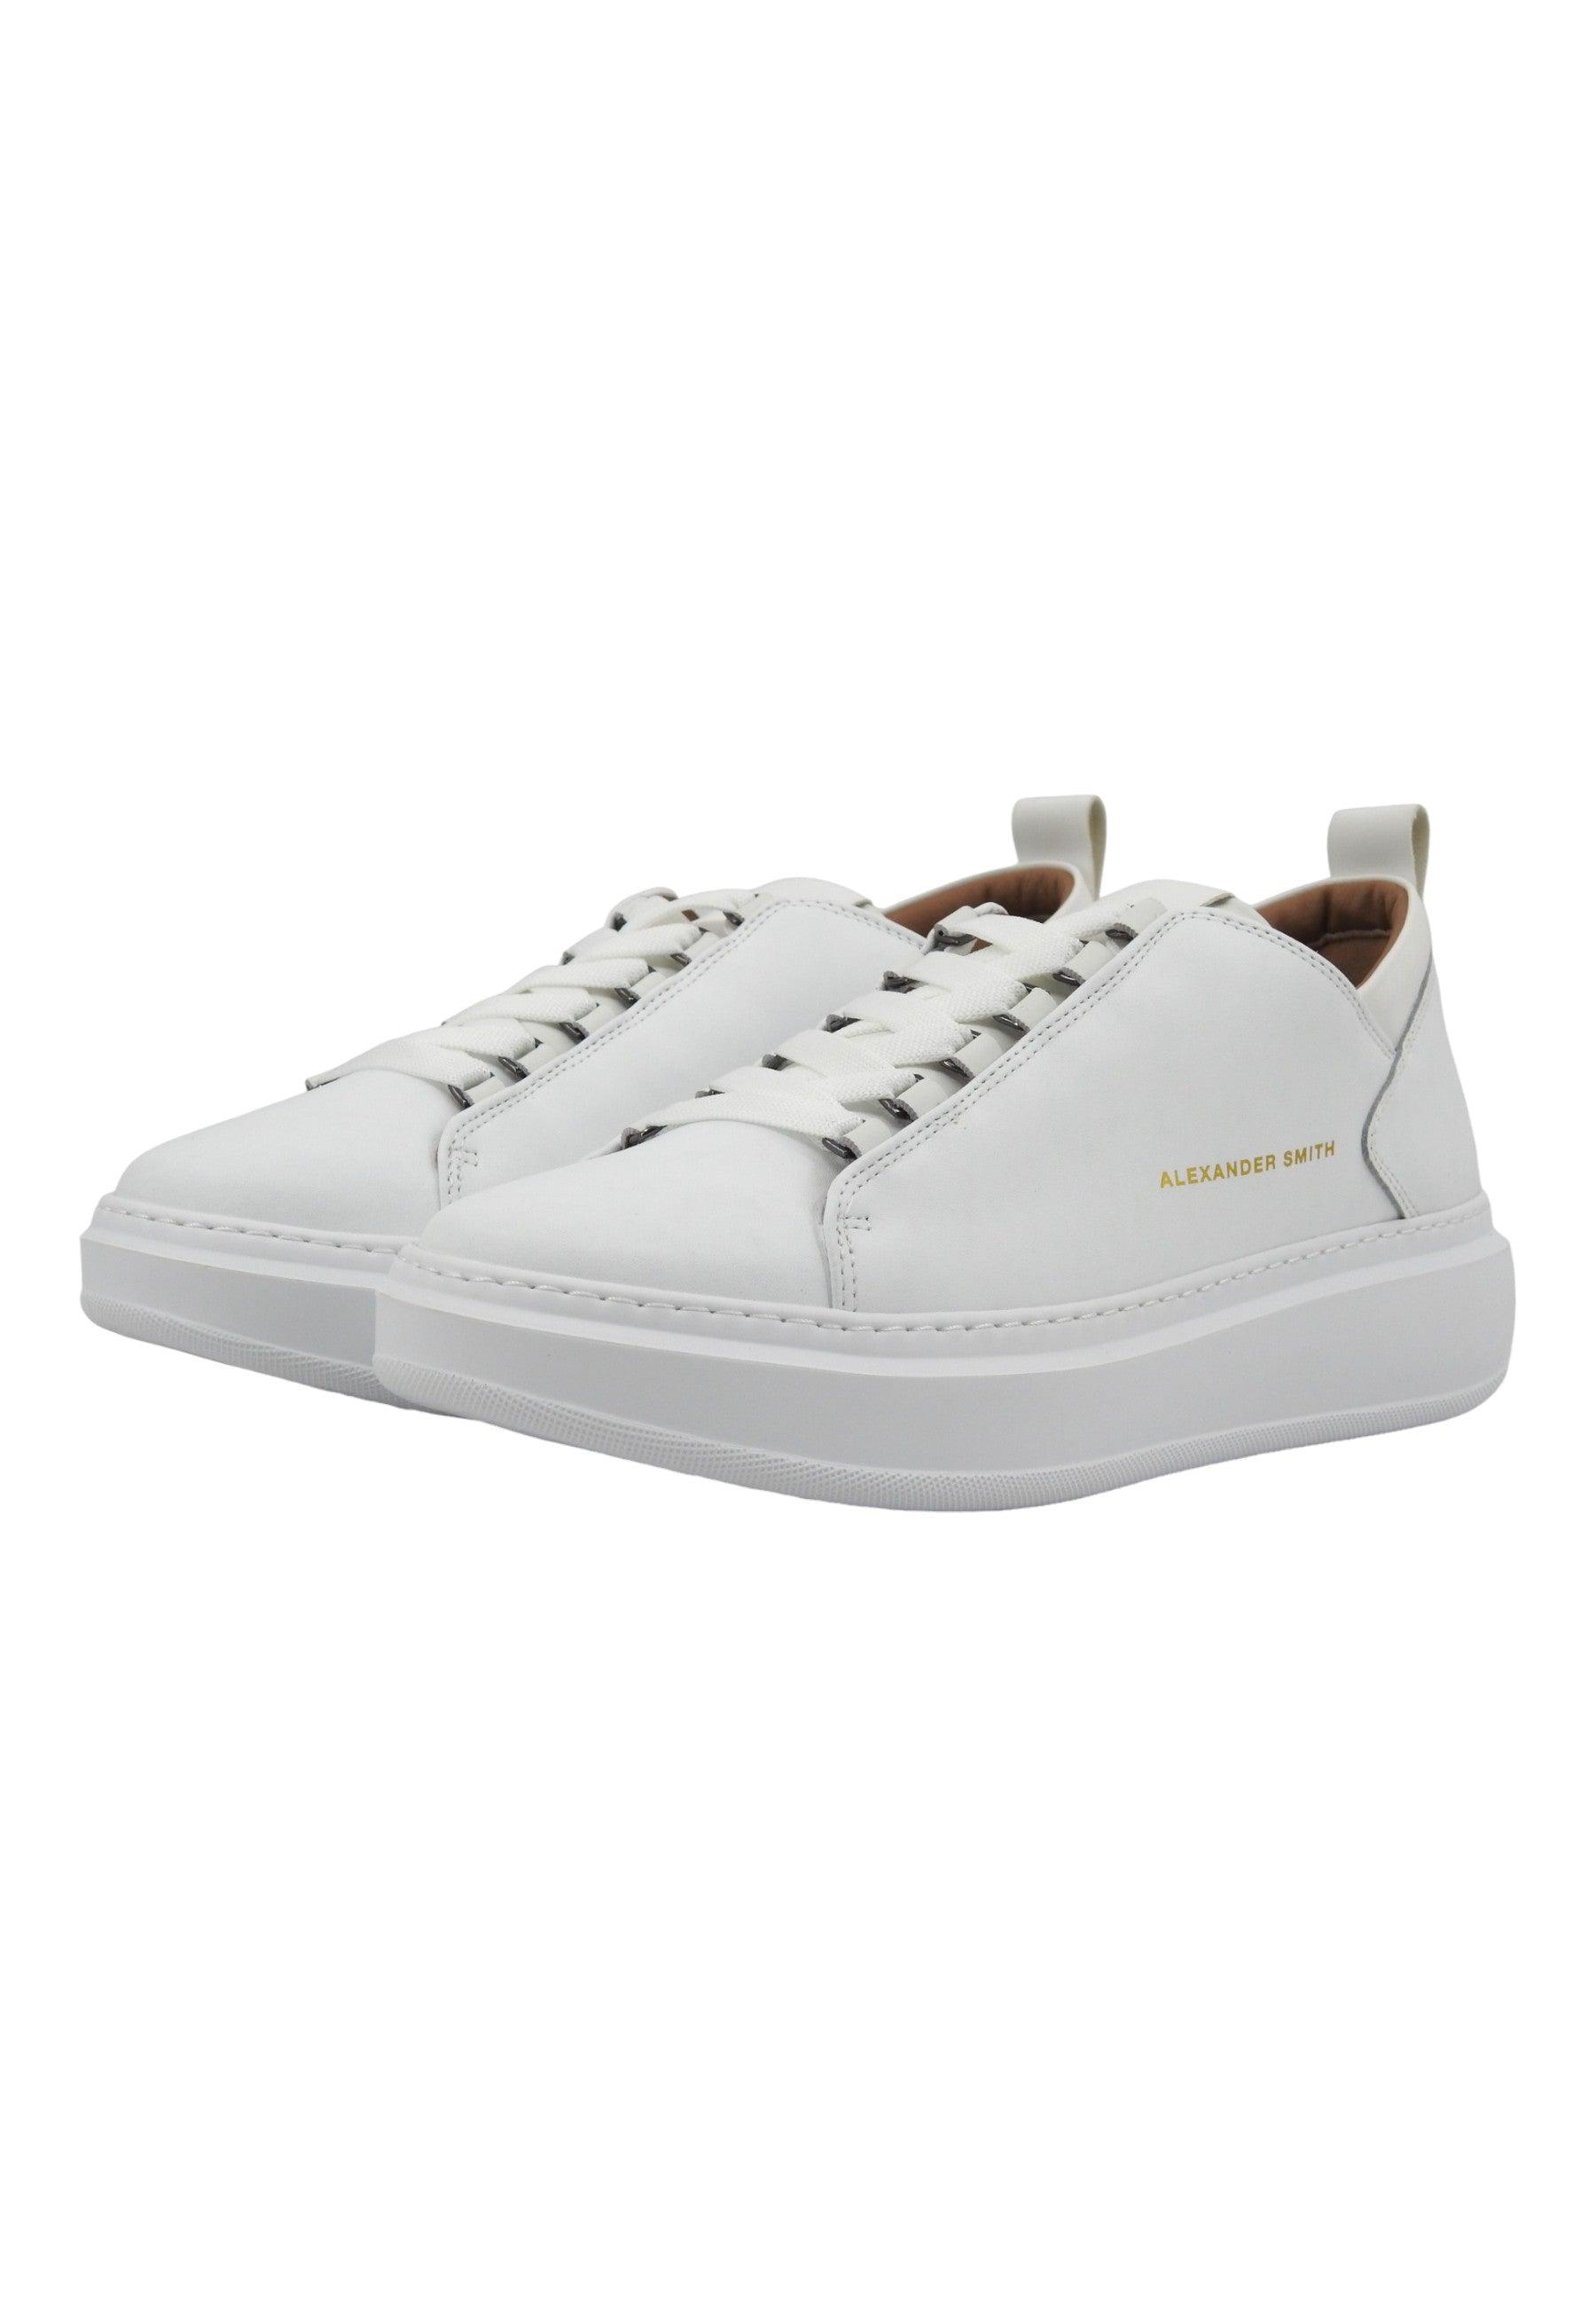 ALEXANDER SMITH Wembley Sneaker Uomo Total White WYM2263 - Sandrini Calzature e Abbigliamento